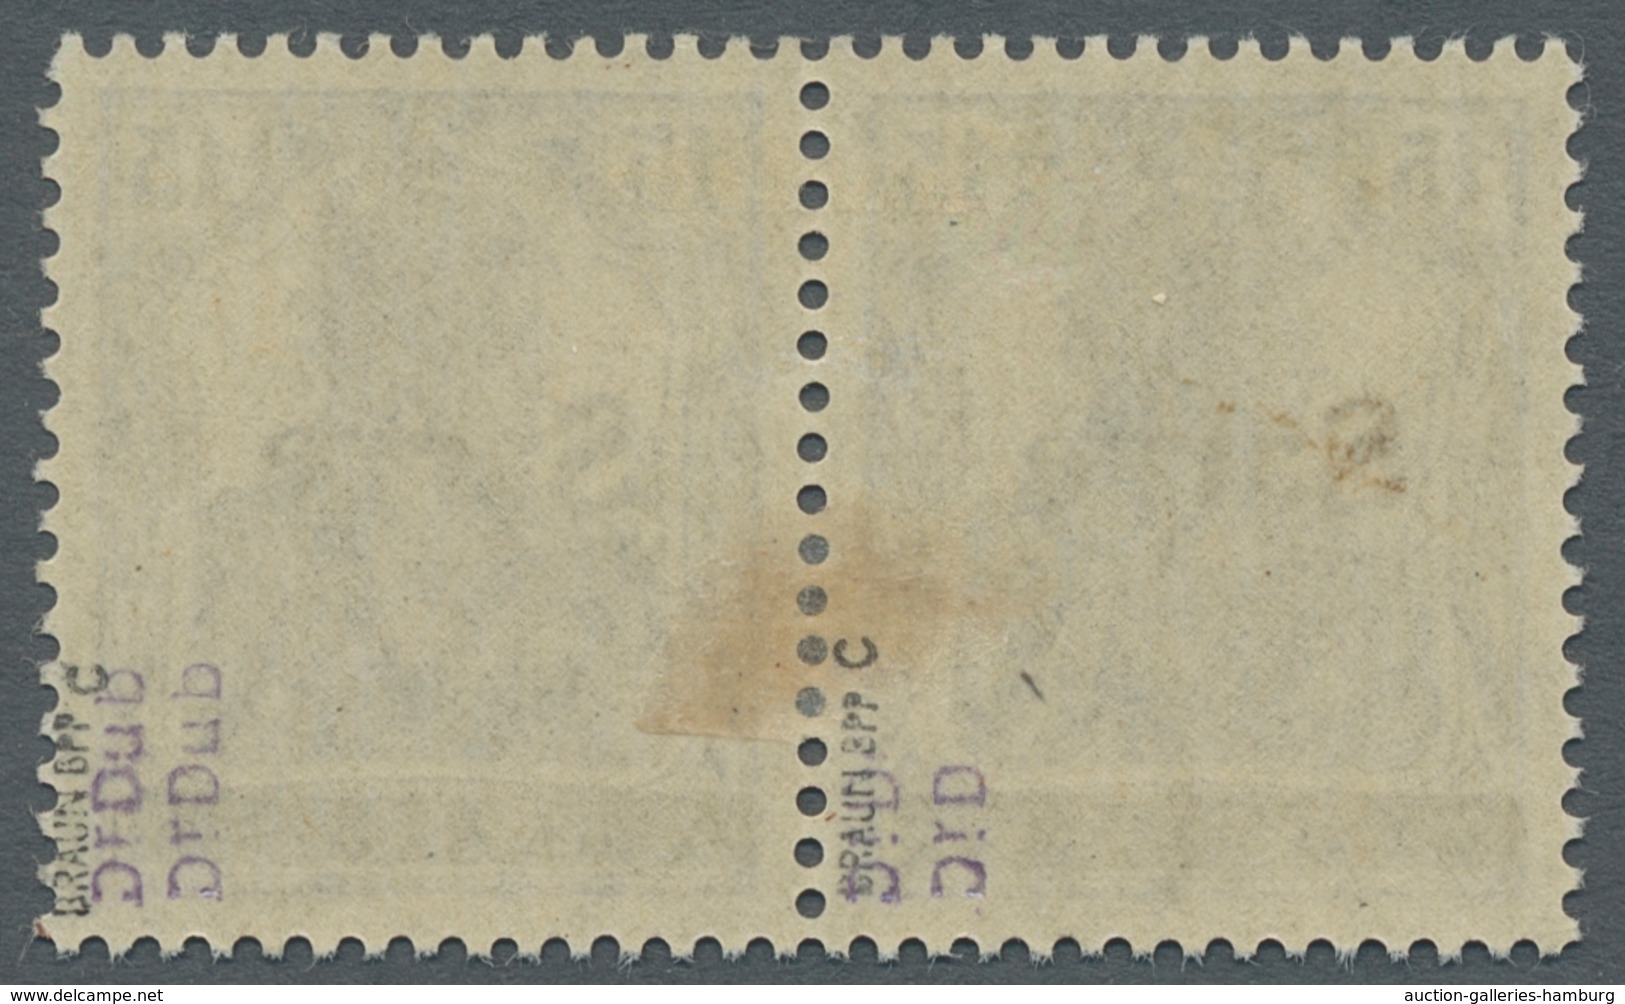 Deutsche Abstimmungsgebiete: Saargebiet: 1920, "10 Pfg. Germania/Sarre Scharlachrot", Postfrischer W - Covers & Documents